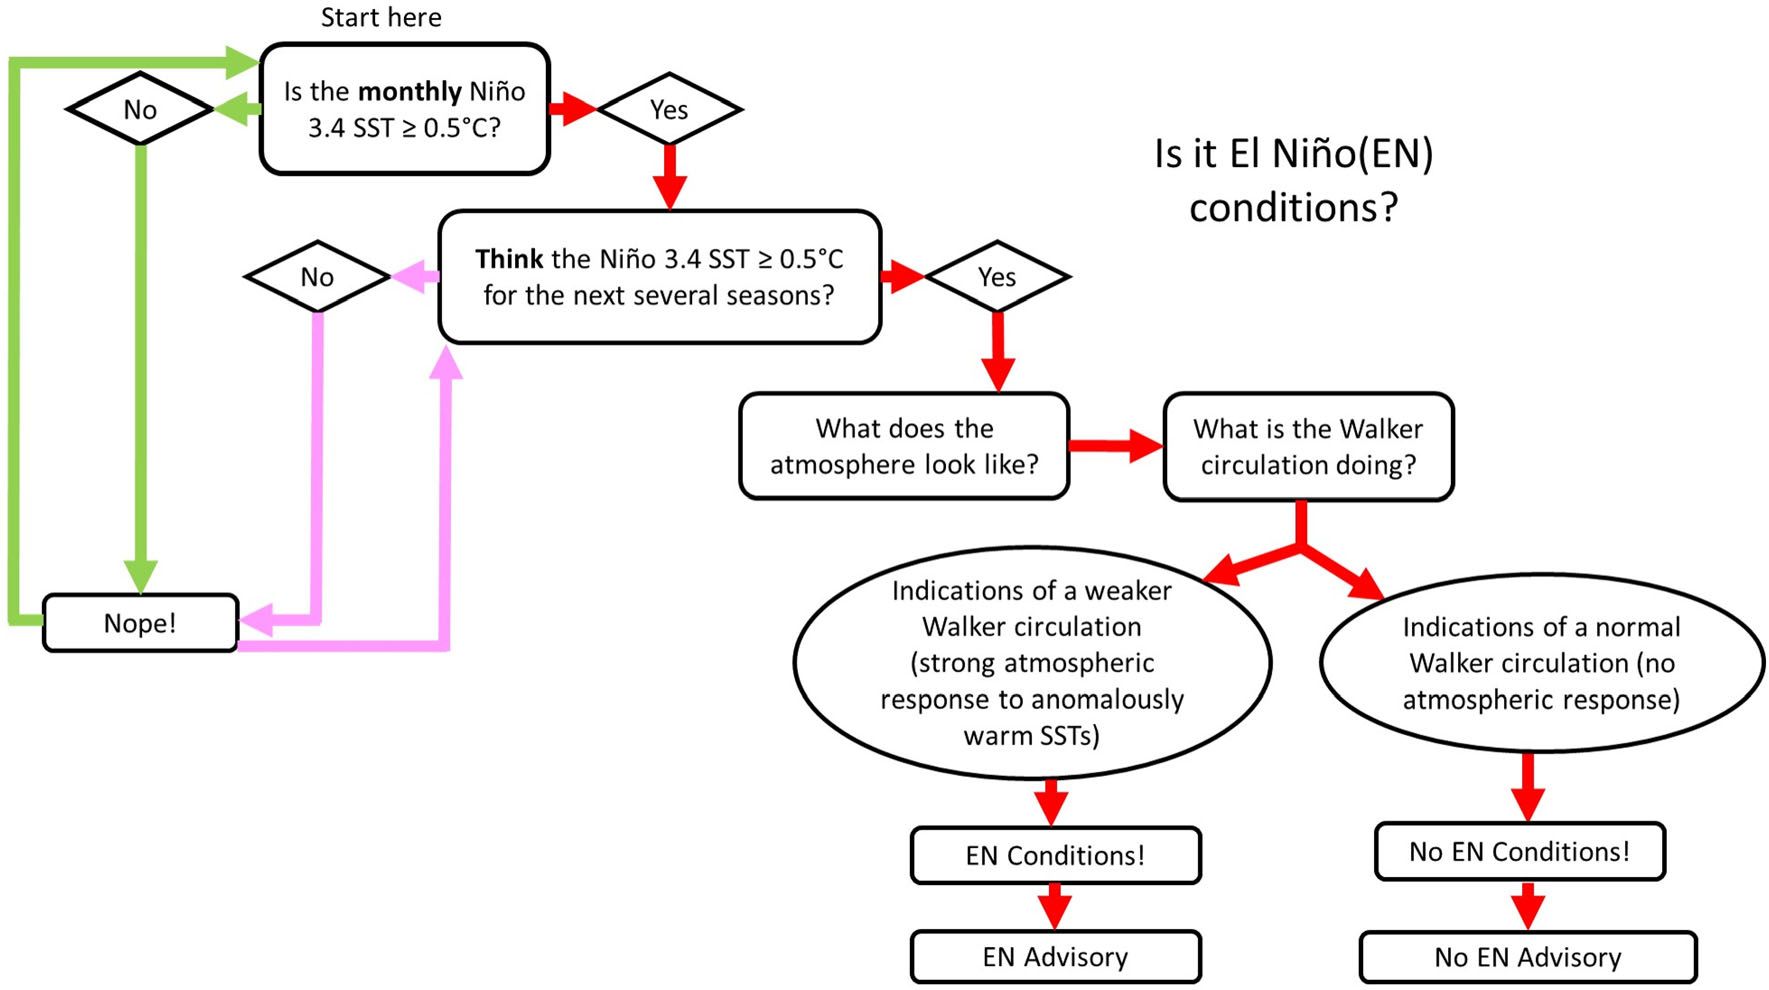 Revidiertes Flussdiagramm mit dem Verfahren zur Bestimmung von El Niño-Bedingungen